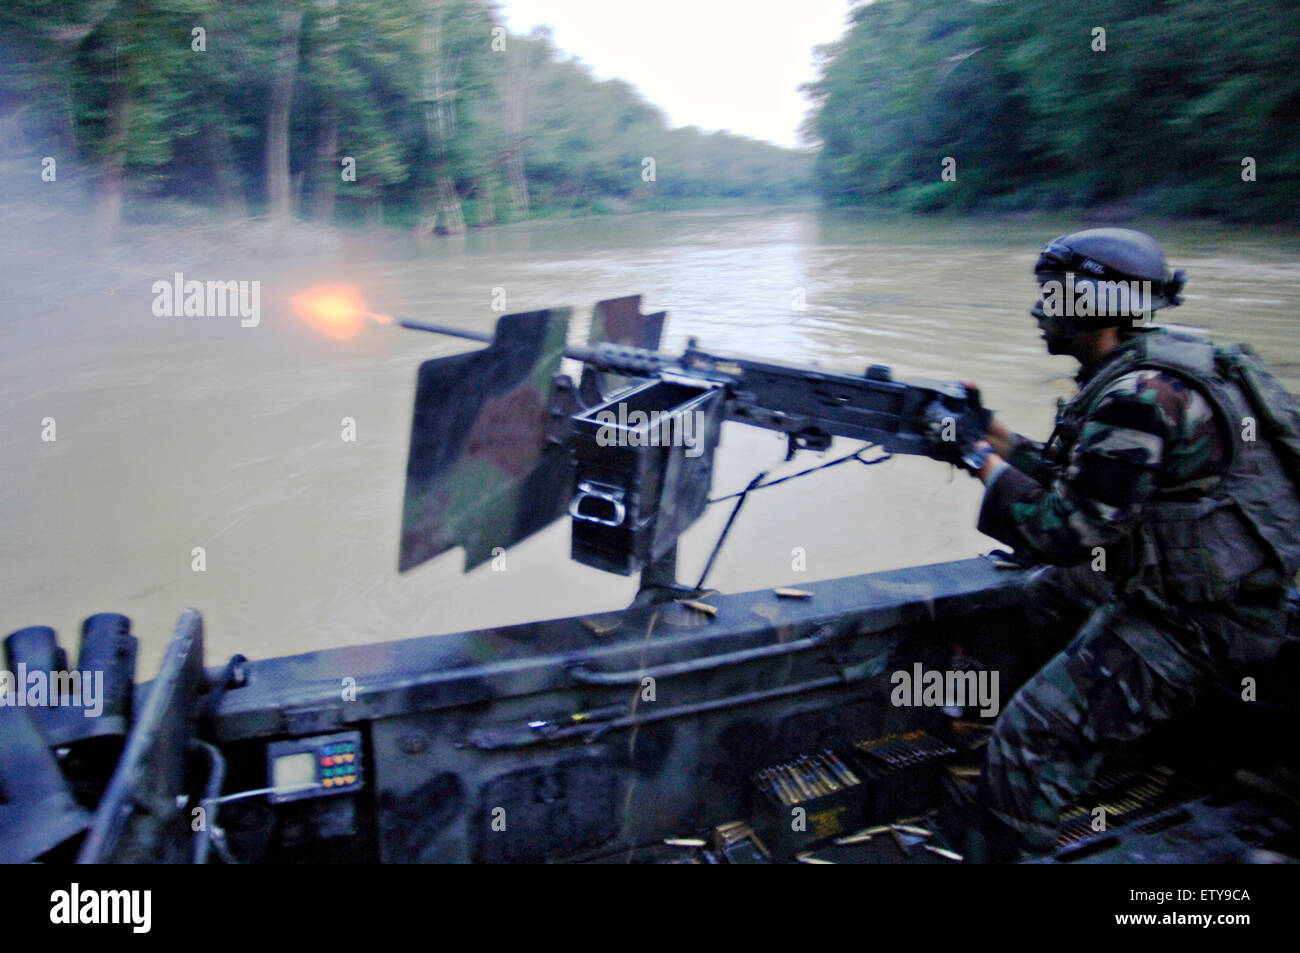 US Navy SEAL Special Warfare lottatori craft equipaggio assegnati a barca speciale Team 22 mans un GAU-17 minigun mitragliatrice durante il live-fire patrol formazione lungo il fiume sale Agosto 25, 2007 a Fort Knox, Kentucky. Foto Stock